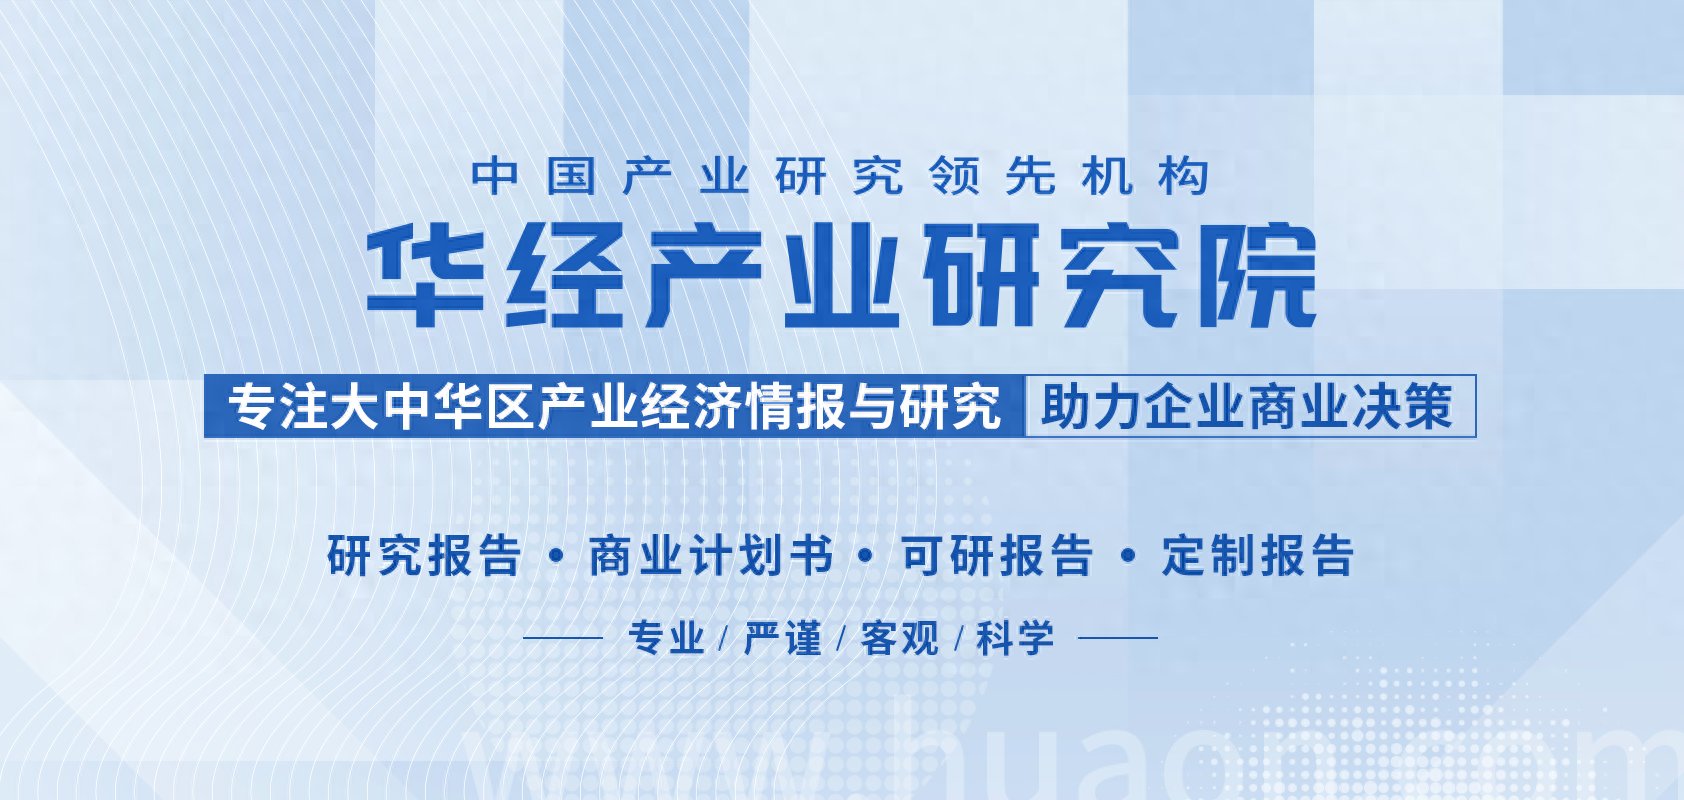 2022年中国铅酸蓄电池行业产量、市场规模、进出口及出口结构分析